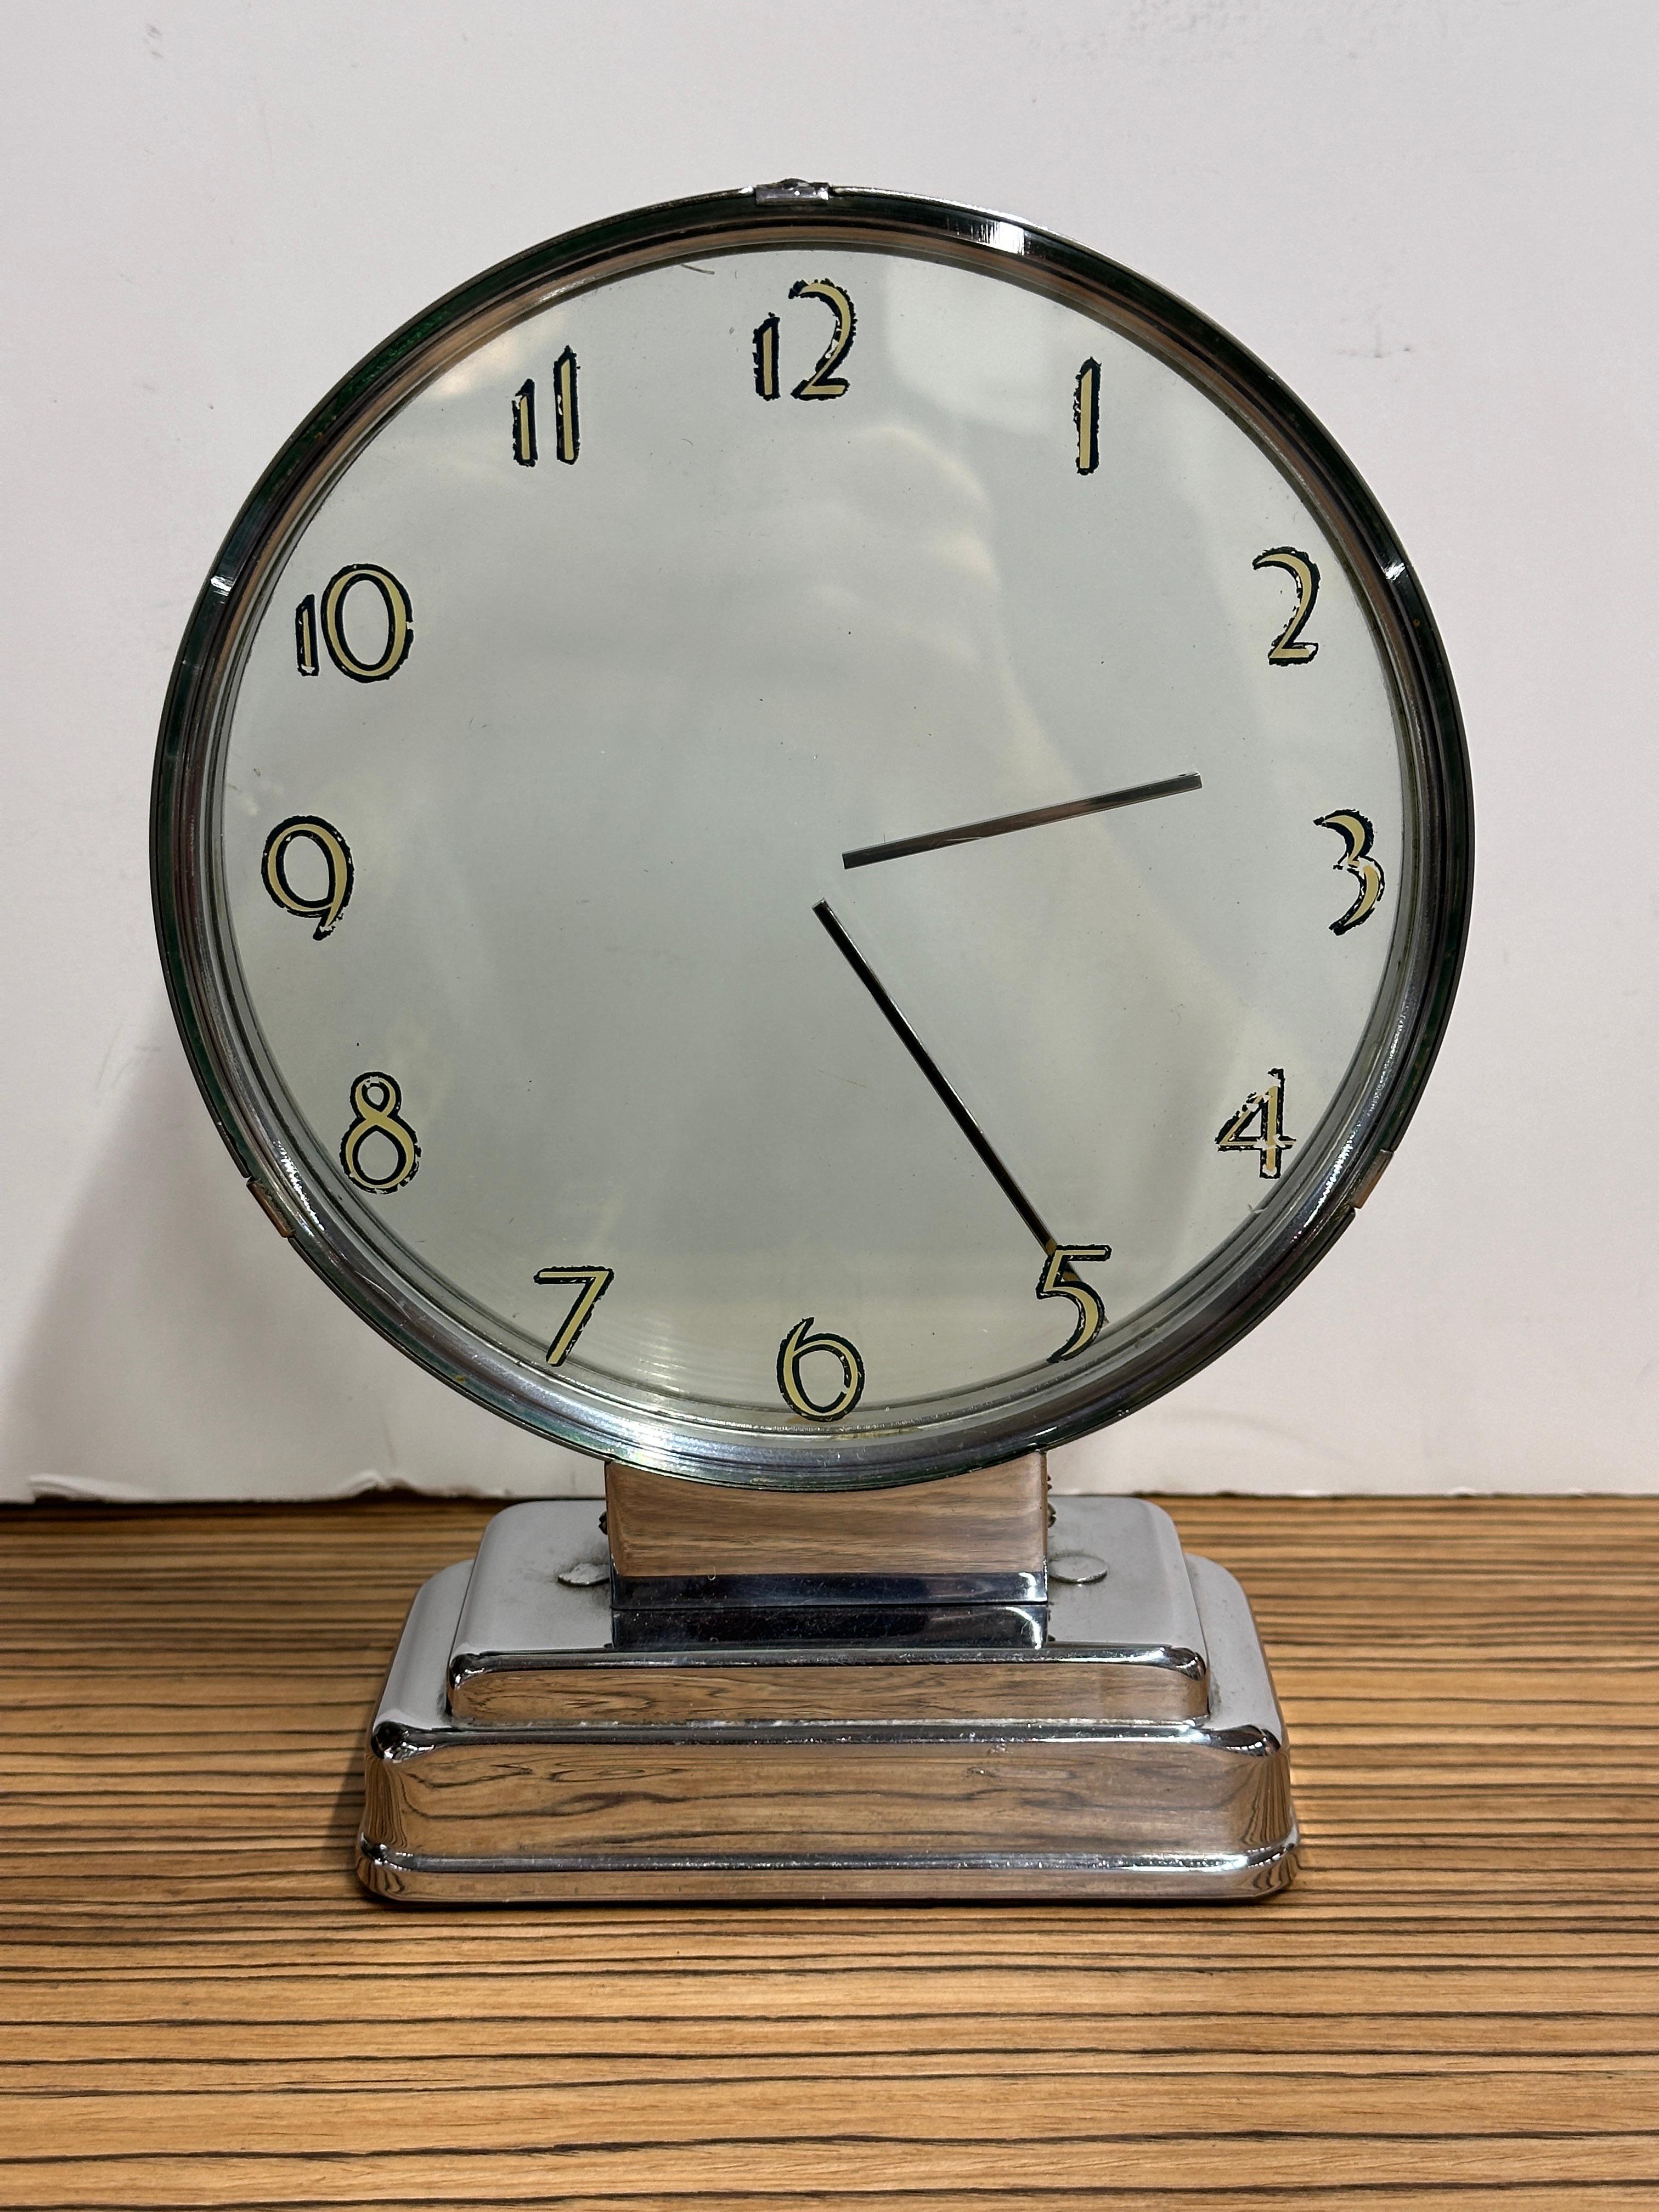 Ein atemberaubendes Uhrendesign von Etalage Reclame. Die Uhr stammt aus den frühen 1940er oder späten 1930er Jahren. Es ist eine mysteriöse Uhr. Im Inneren befinden sich zwei Scheiben, an denen Hände befestigt sind, die sich drehen. Auf der